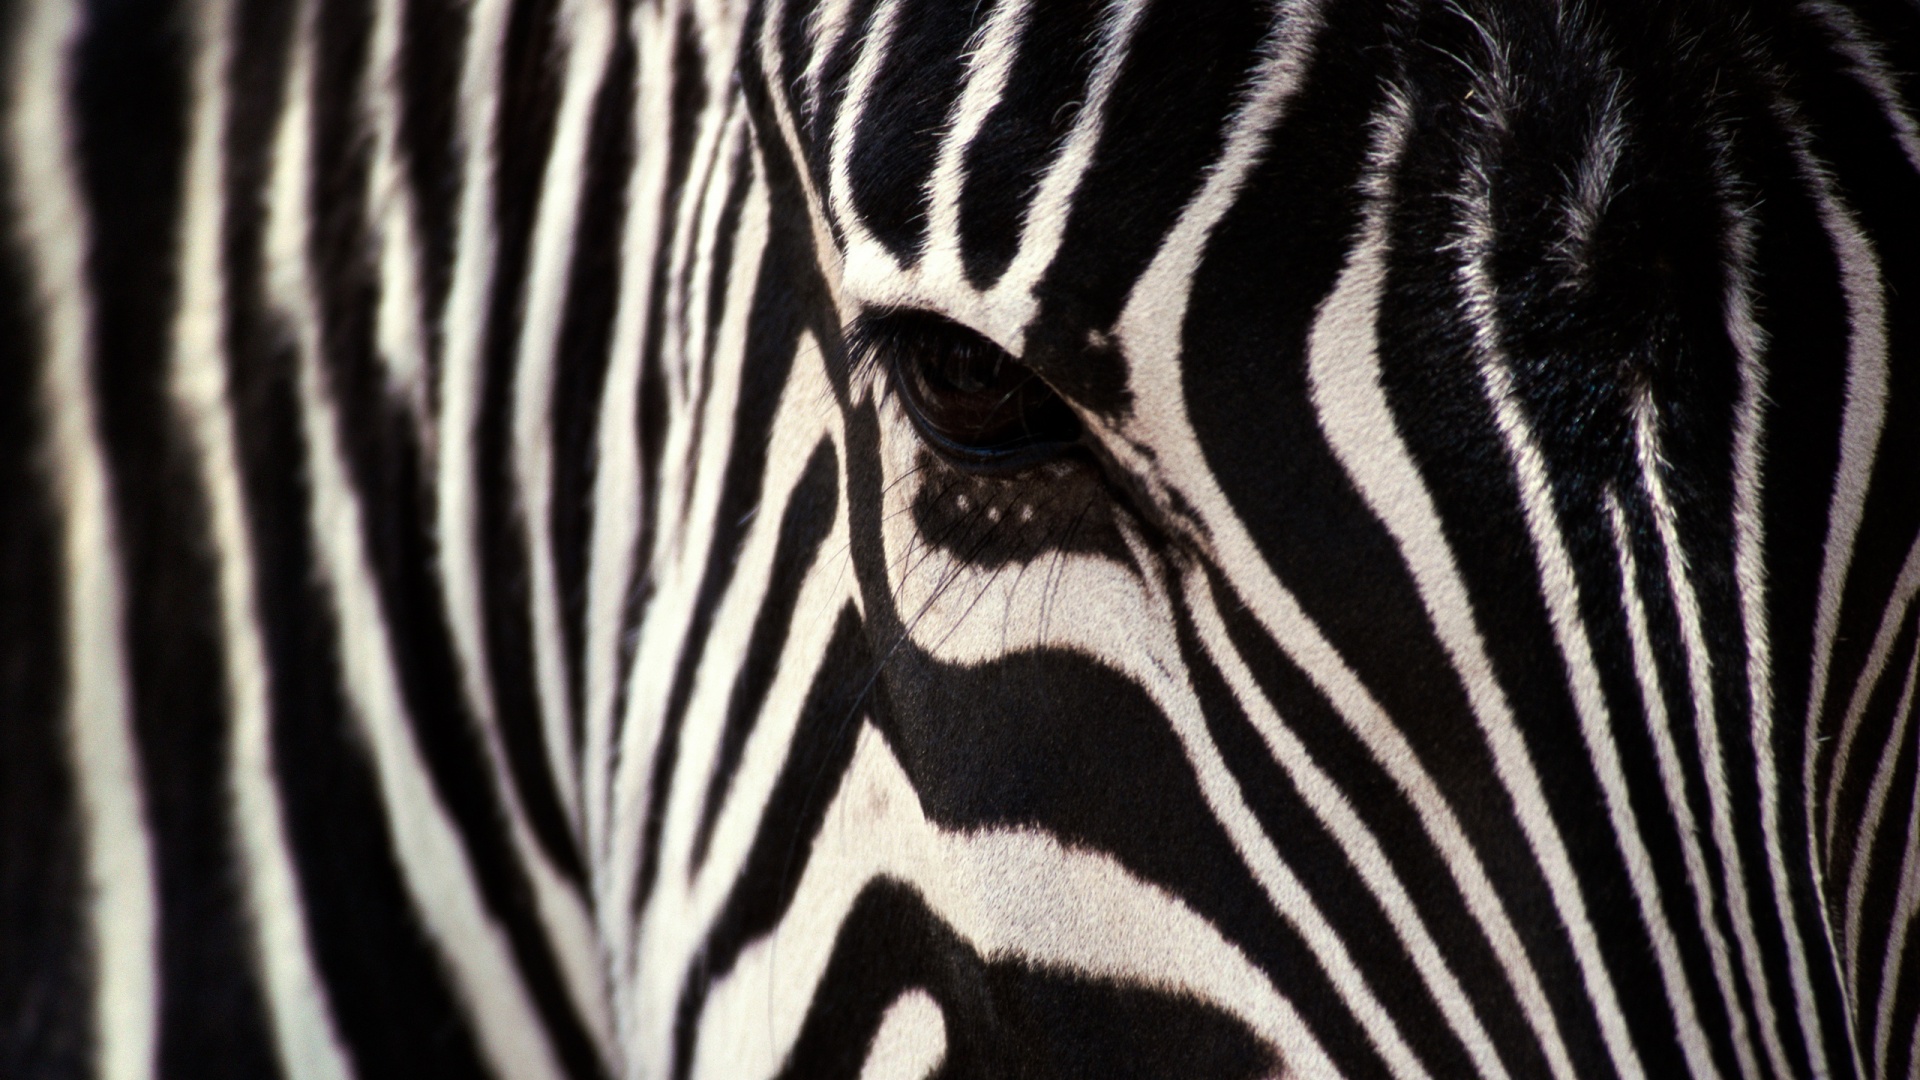 HD Best Zebra Skin Black and White Stripe Wallpaper 1080p Full ...